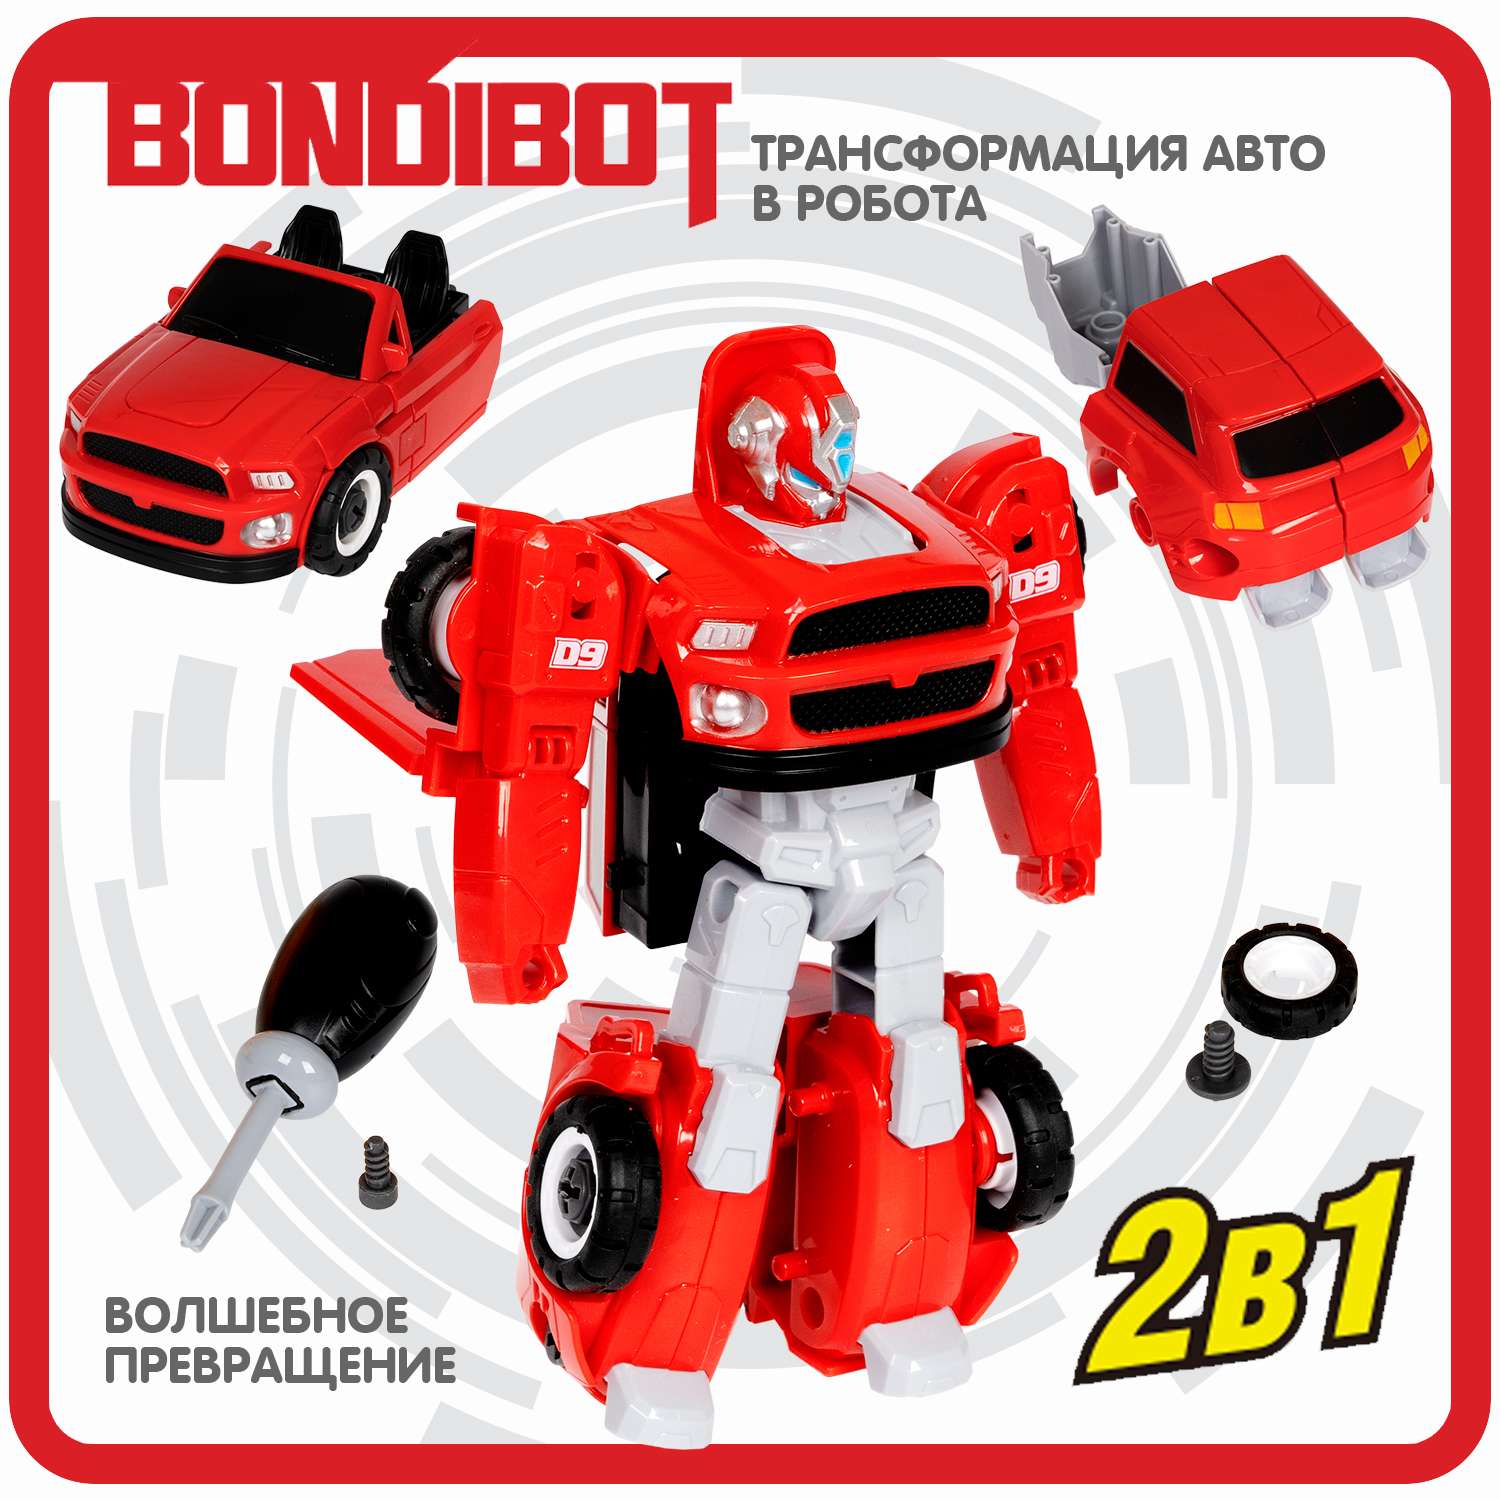 Трансформер BONDIBON Bondibot робот-автомобиль с отвёрткой 2 в 1 джип с велосипедом красного цвета - фото 4